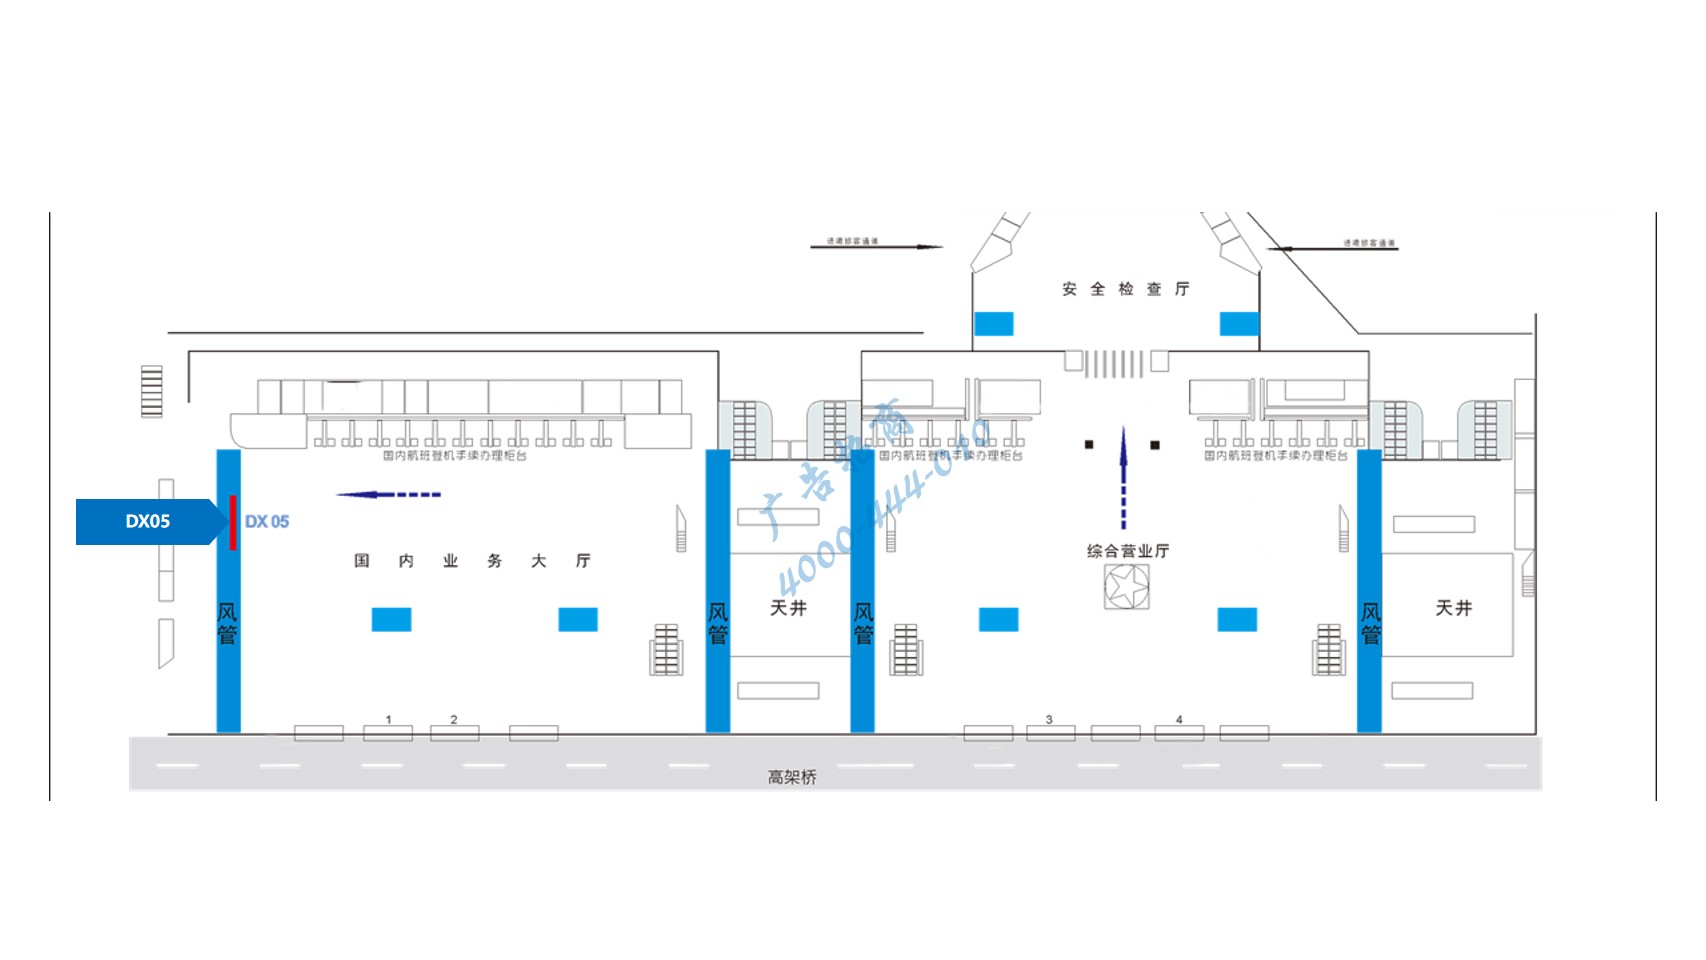 成都双流机场广告-国内出发大厅高处灯箱1位置图